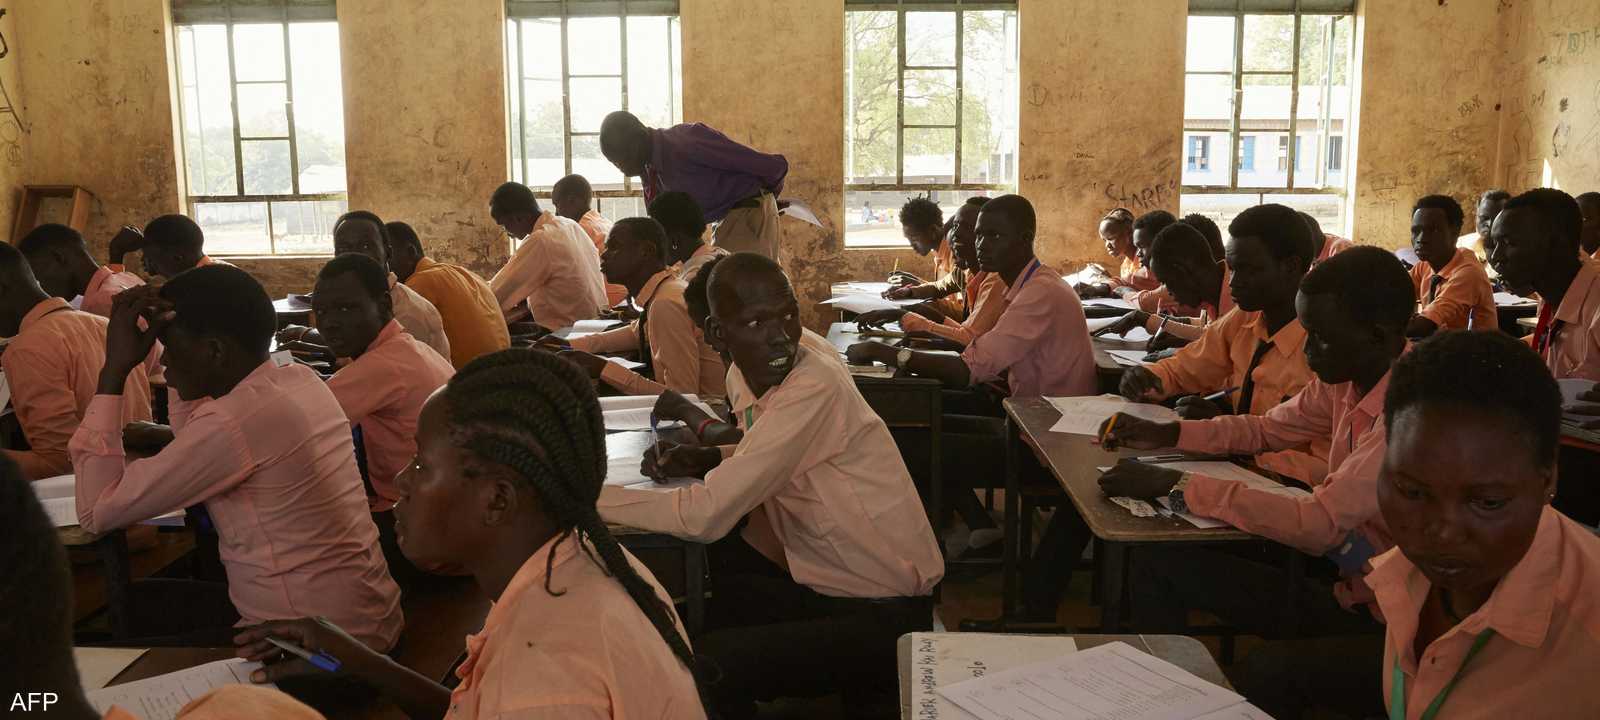 مدرسة في جنوب السودان